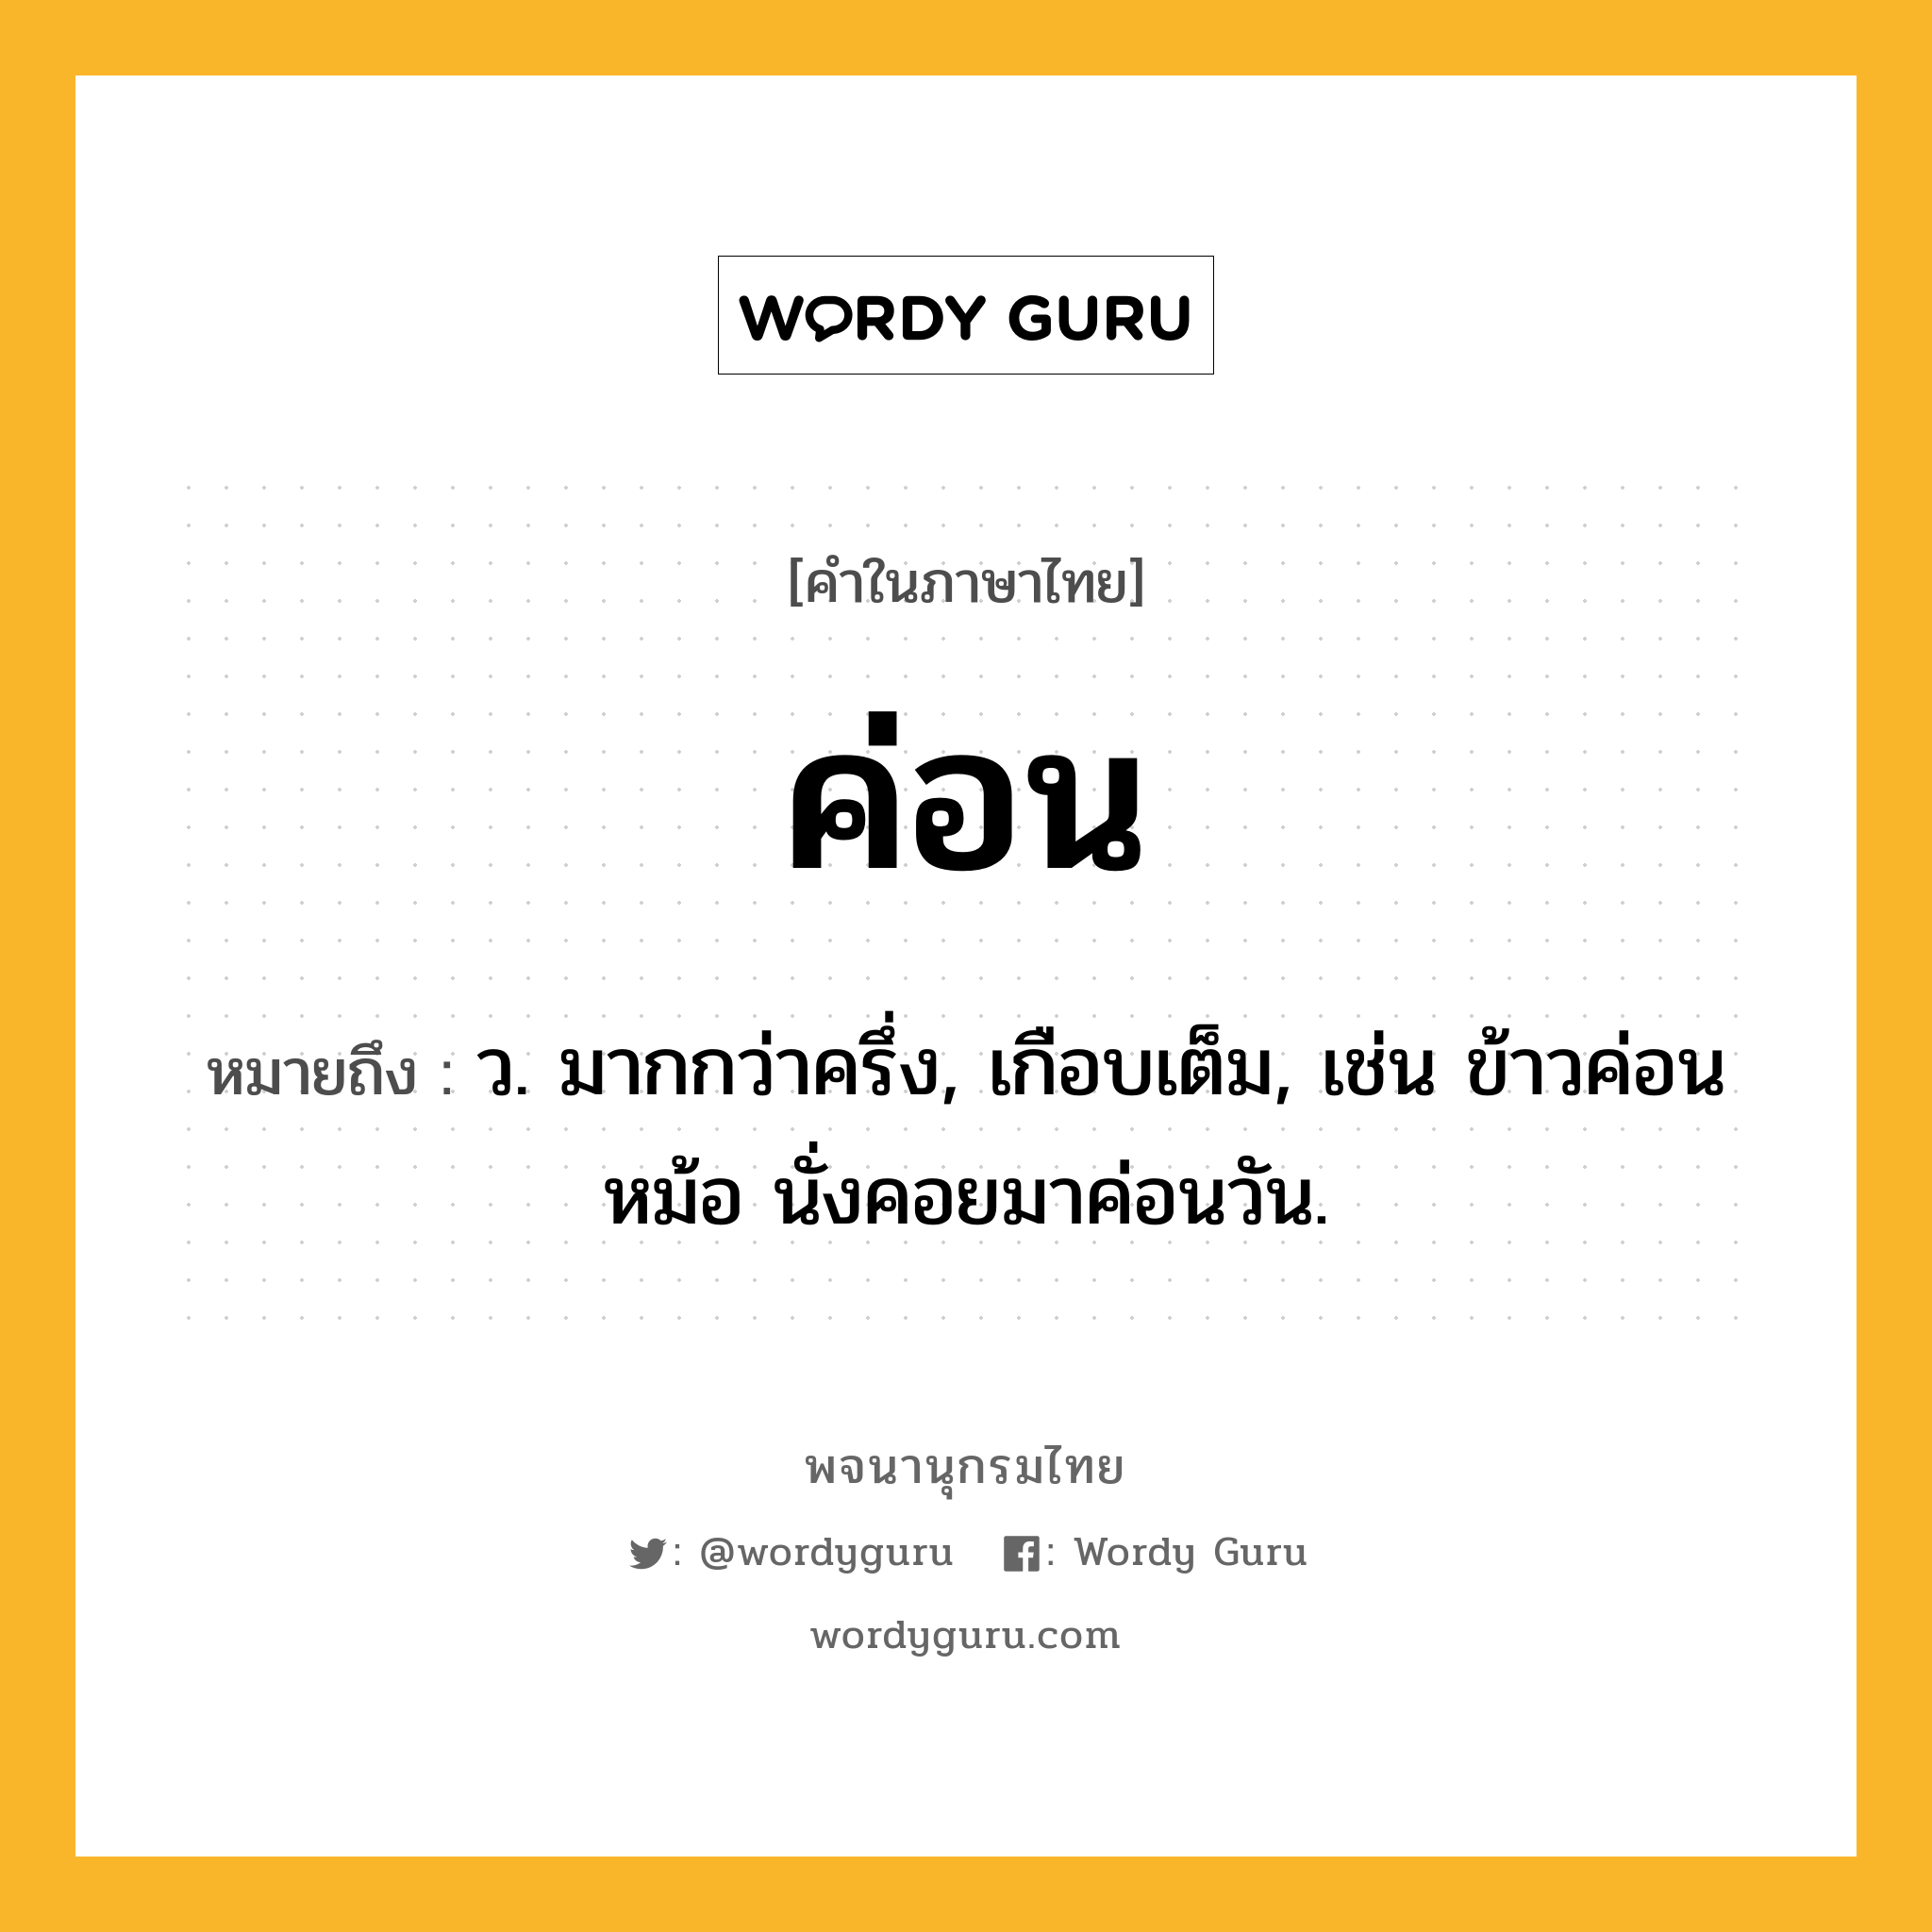 ค่อน ความหมาย หมายถึงอะไร?, คำในภาษาไทย ค่อน หมายถึง ว. มากกว่าครึ่ง, เกือบเต็ม, เช่น ข้าวค่อนหม้อ นั่งคอยมาค่อนวัน.